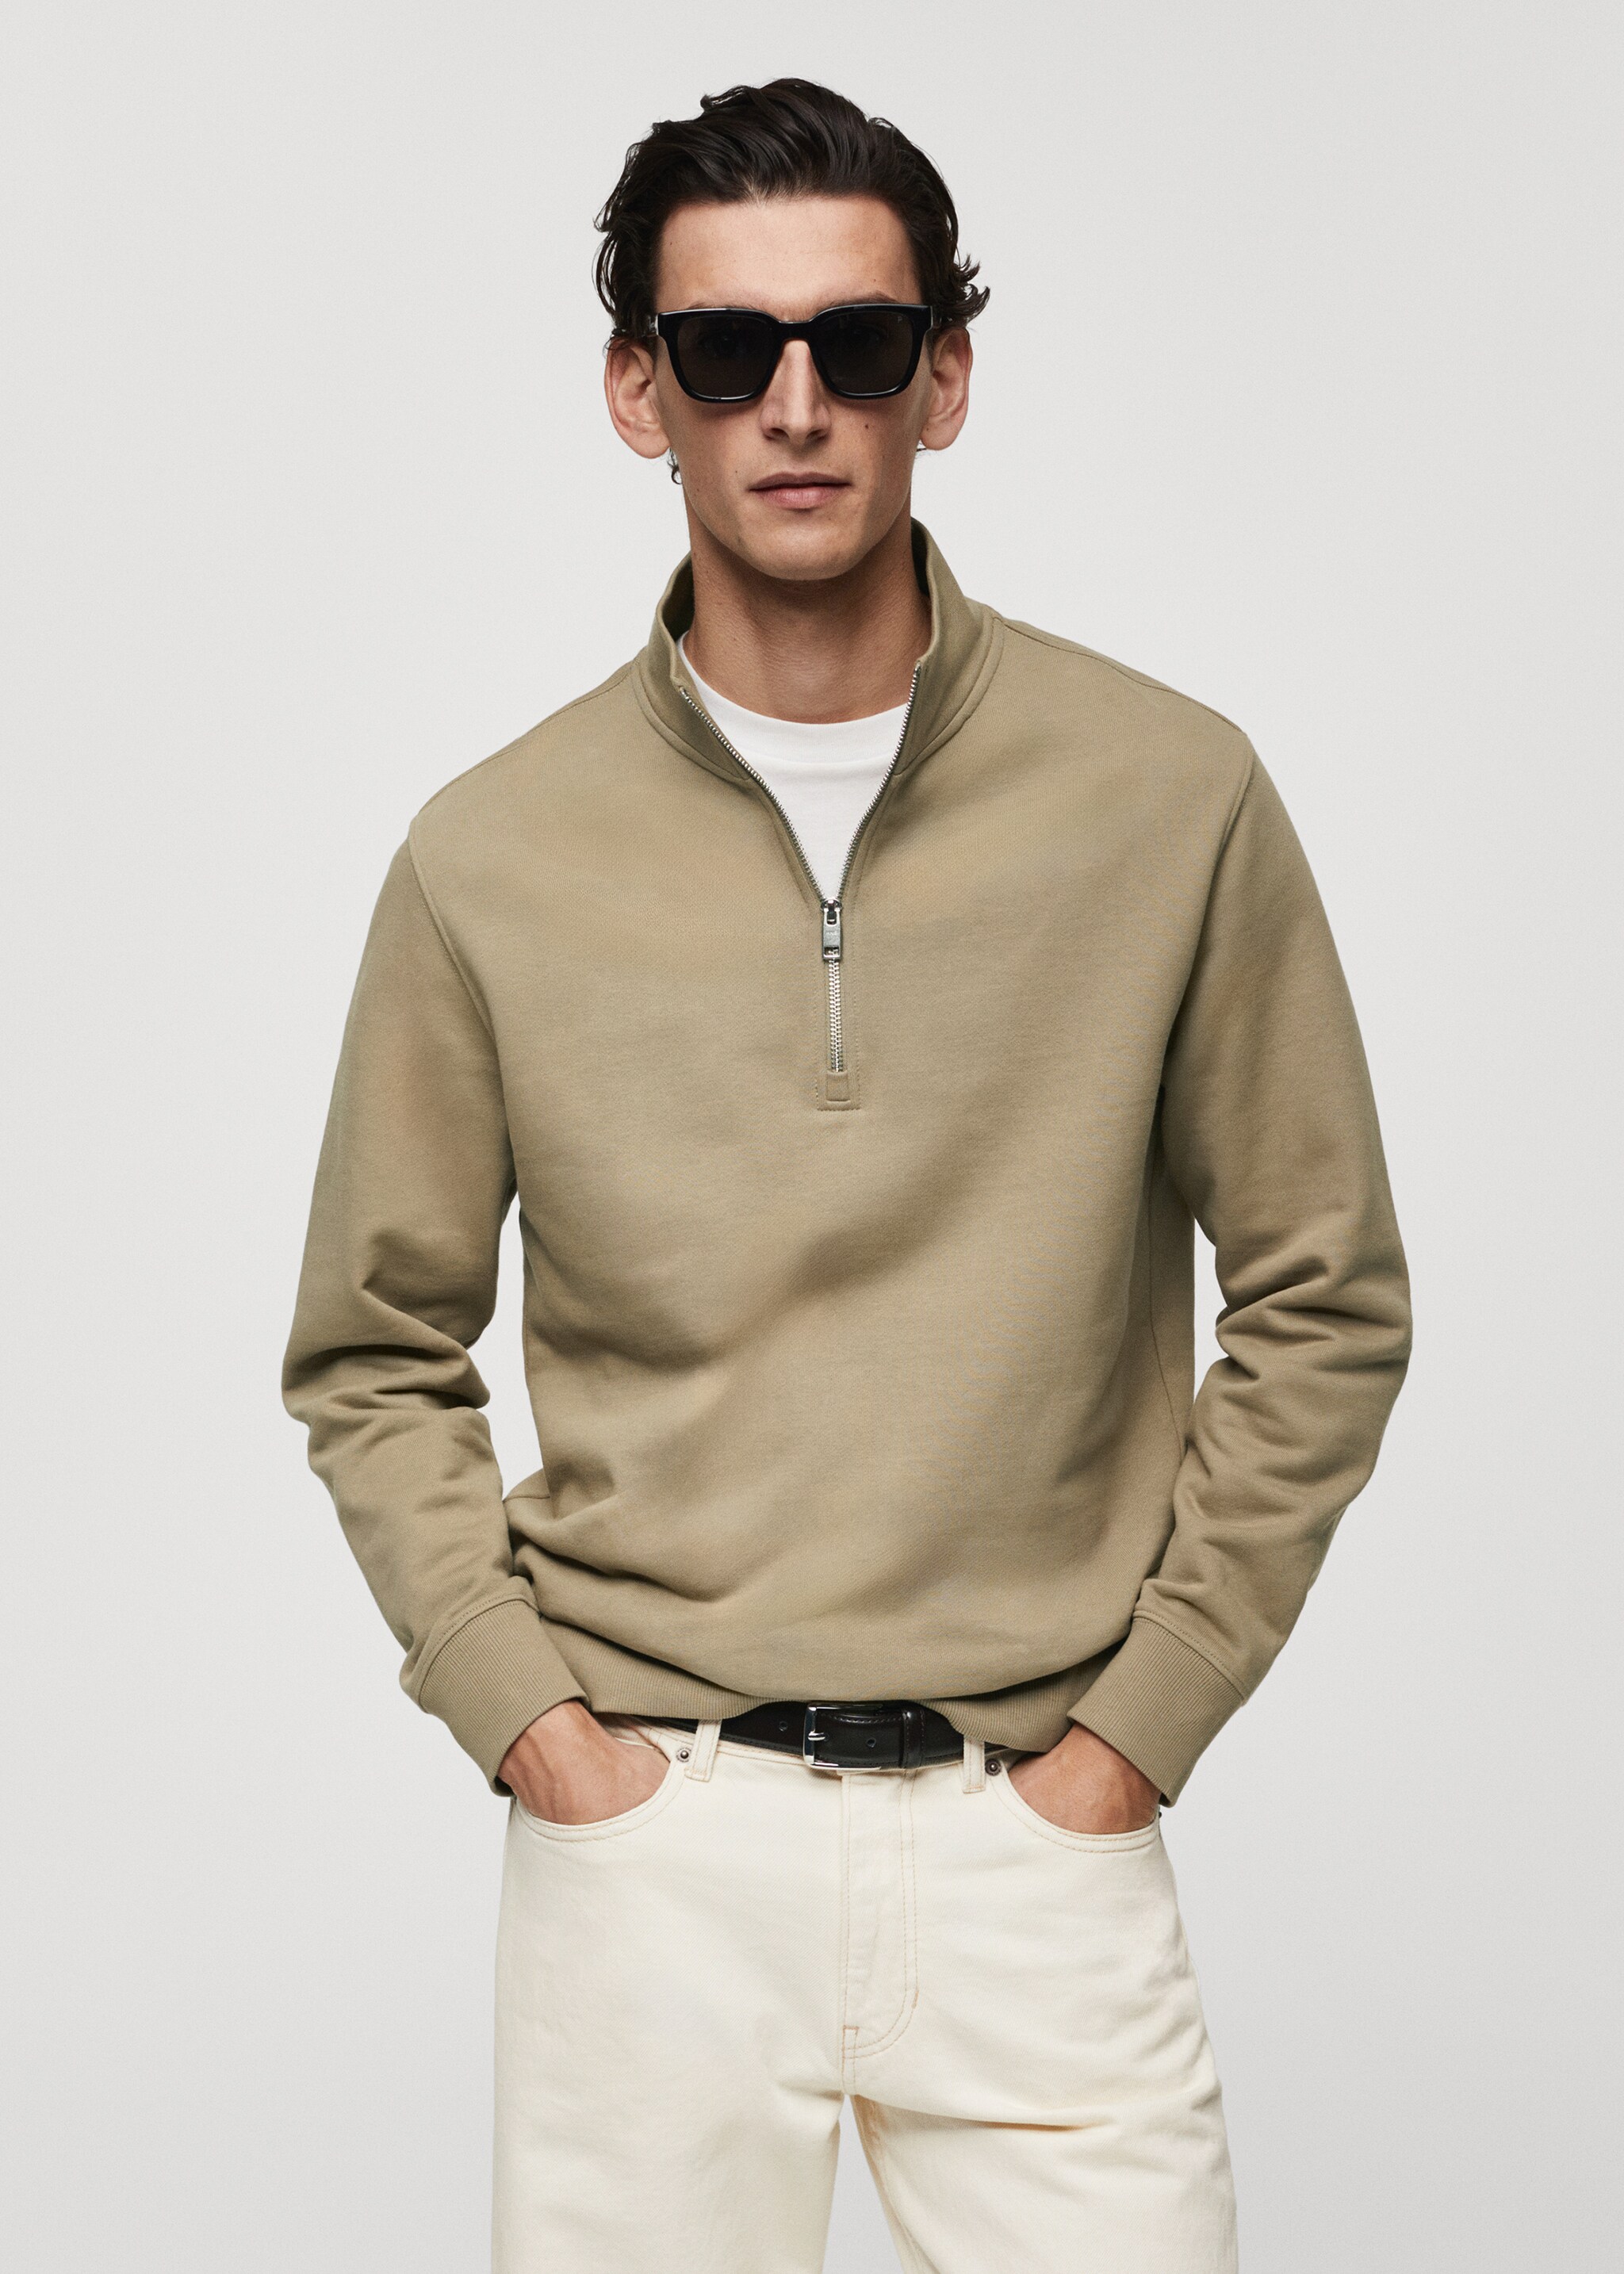 Sweatshirt de algodão com fecho de correr - Plano médio